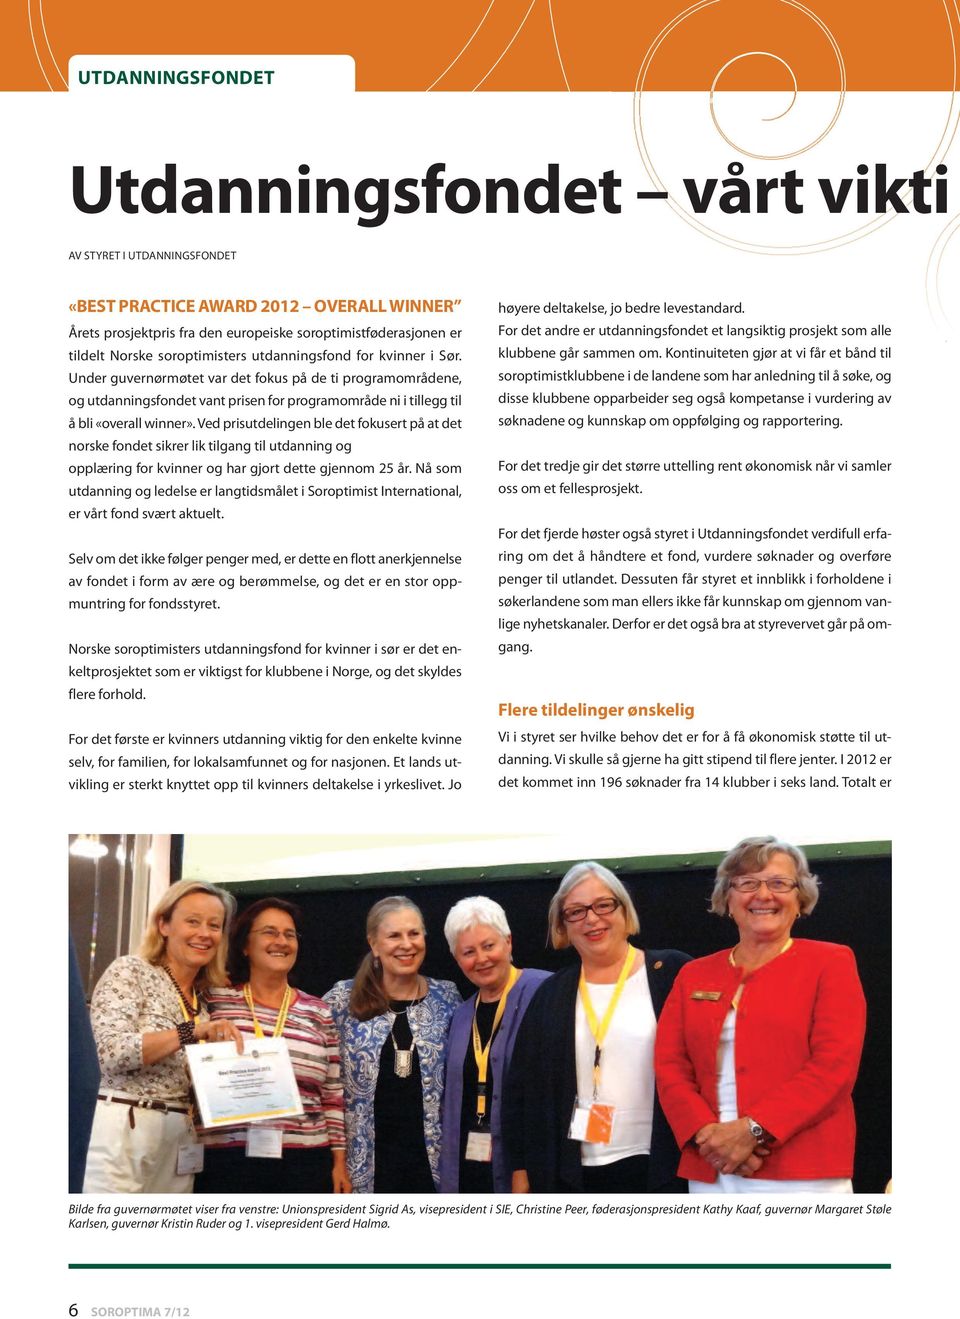 Ved prisutdelingen ble det fokusert på at det norske fondet sikrer lik tilgang til utdanning og opplæring for kvinner og har gjort dette gjennom 25 år.